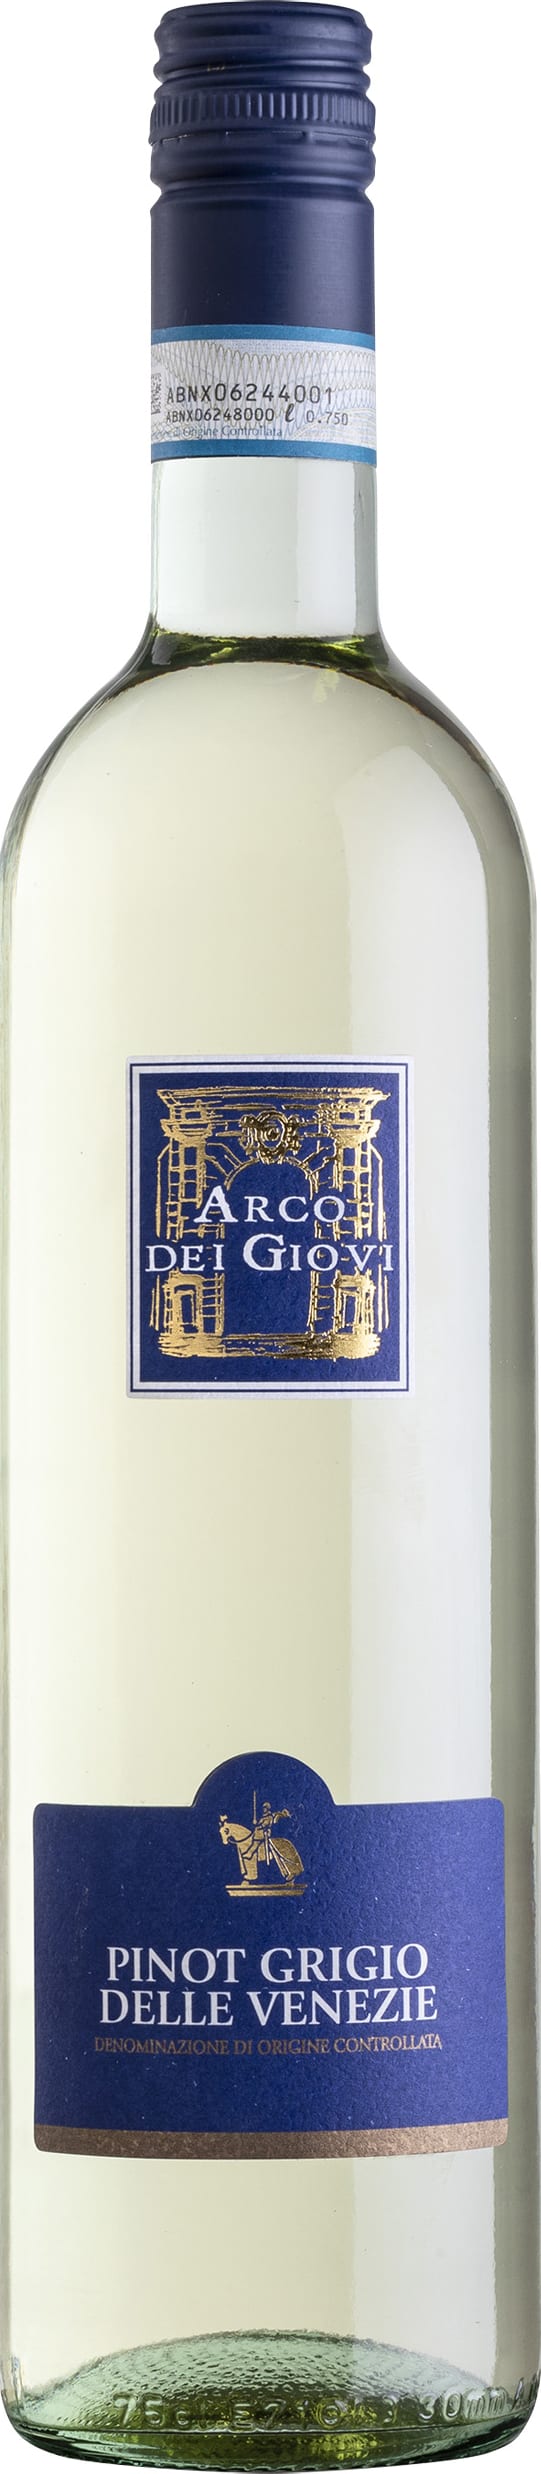 Pinot Grigio DOC 22 Arco dei Giovi 75cl - Buy Arco dei Giovi Wines from GREAT WINES DIRECT wine shop